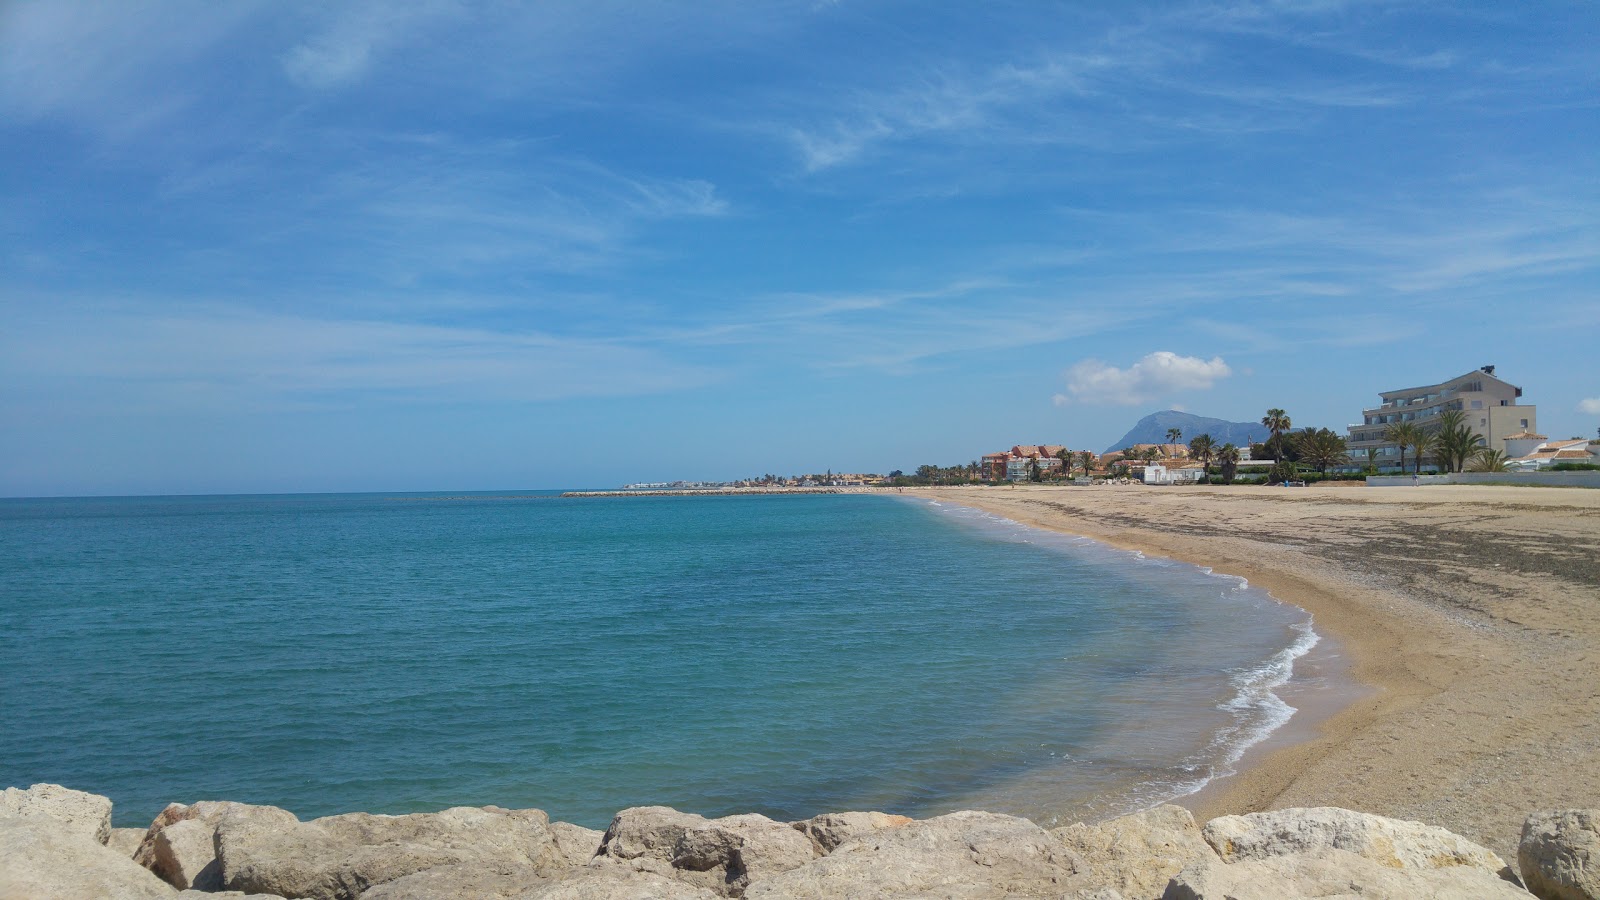 Playa el Vergel'in fotoğrafı kahverengi kum yüzey ile